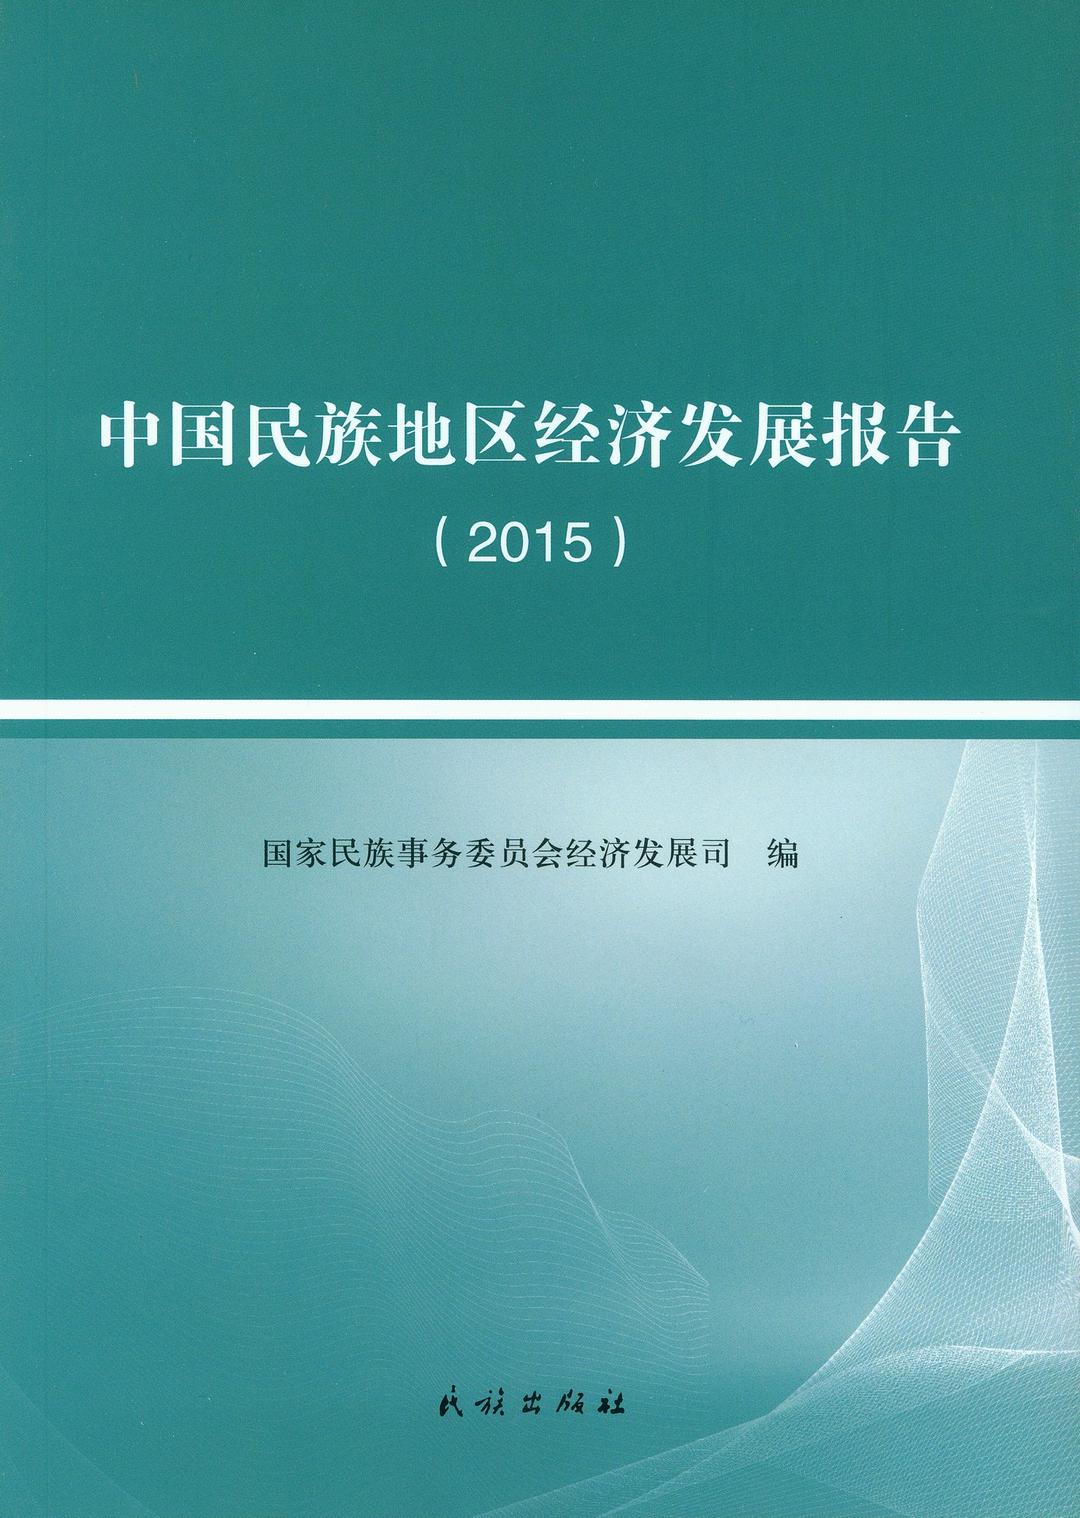 中国民族地区经济发展报告 2015